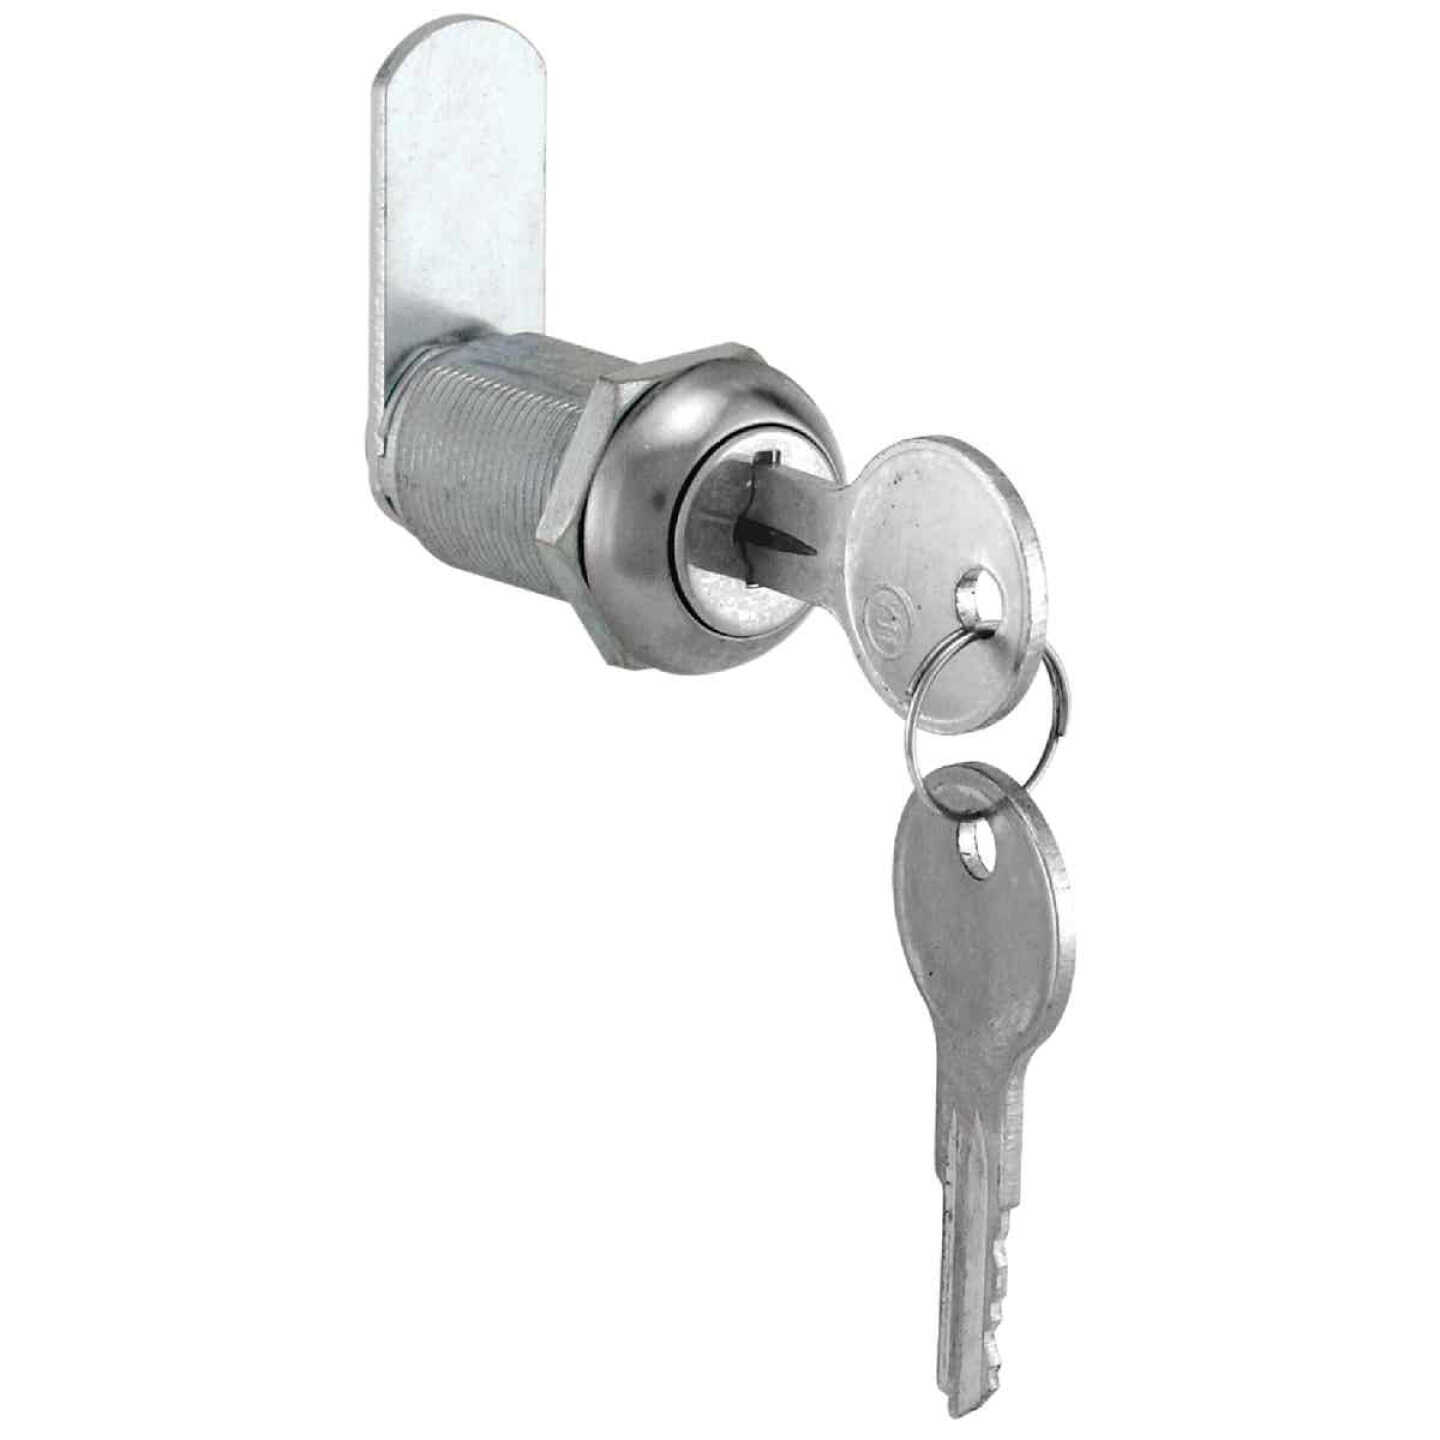 Closet Door Latch, Closet Door Lock, Small Door Lock, Cabinet Door Latch,  Secretary Desk Lock, Small Glass Knob, Cabinet Hardware 